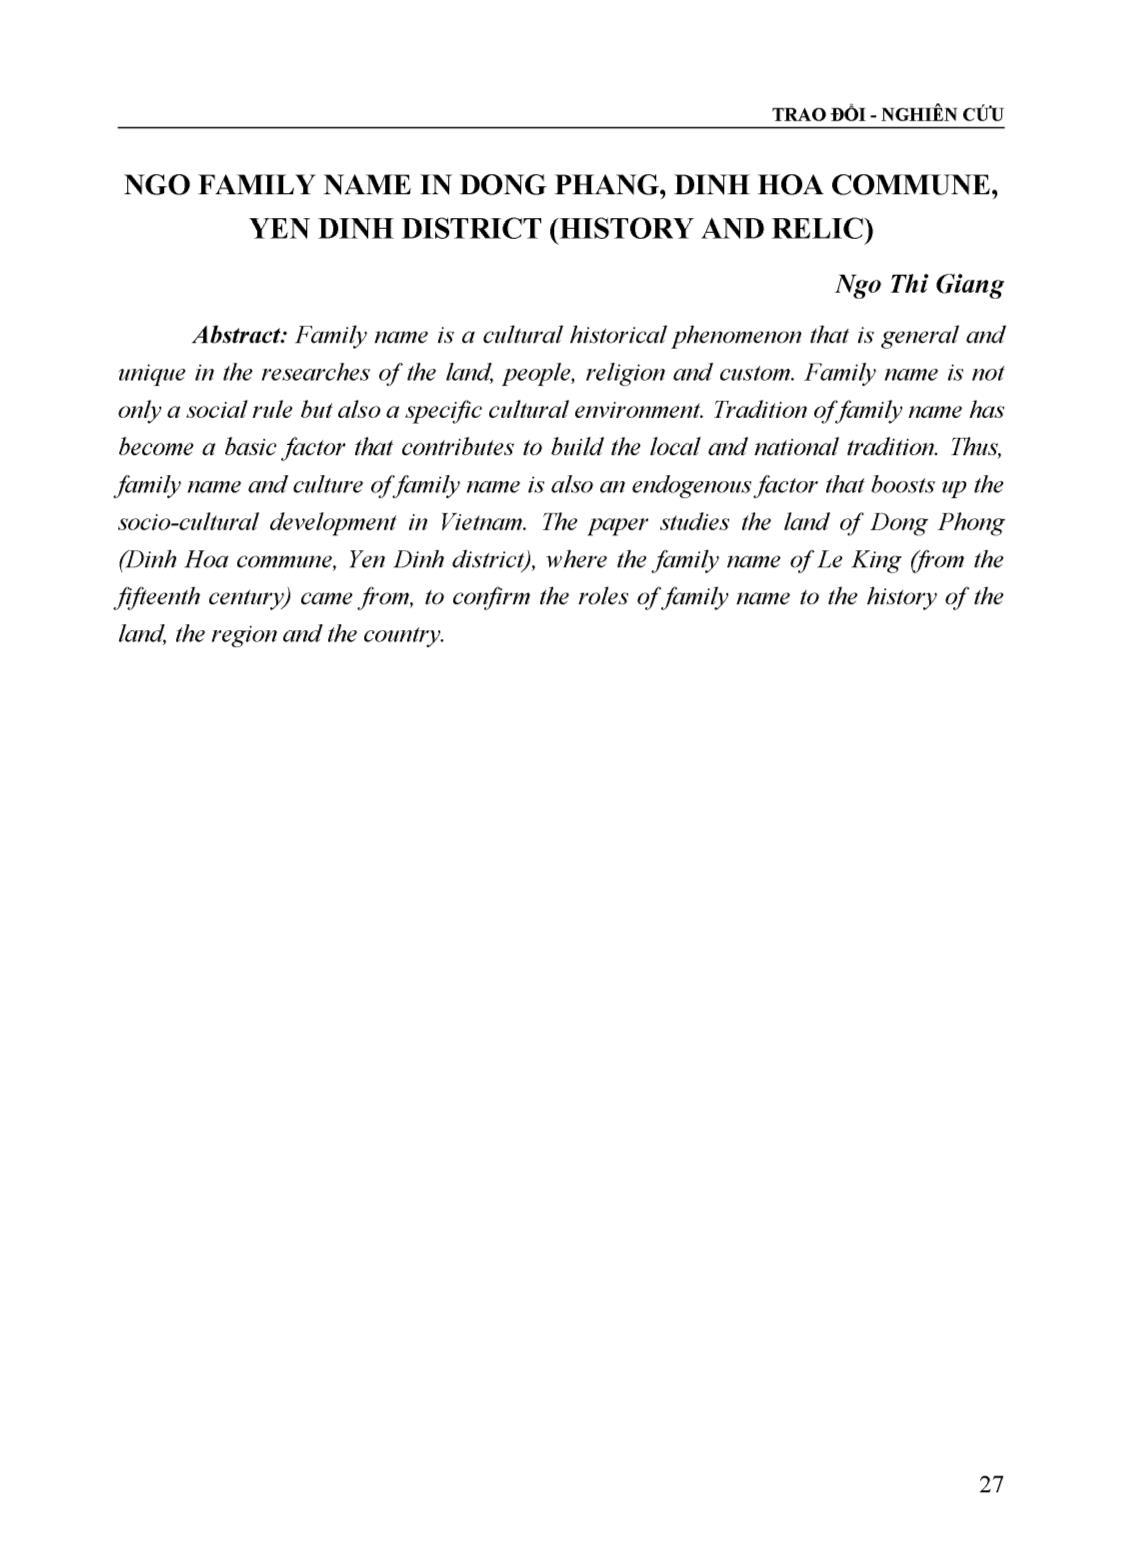 Dòng họ Ngô ở Đồng Phang xã Định Hòa, huyện Yên Định (Lịch sử và di tích) trang 9